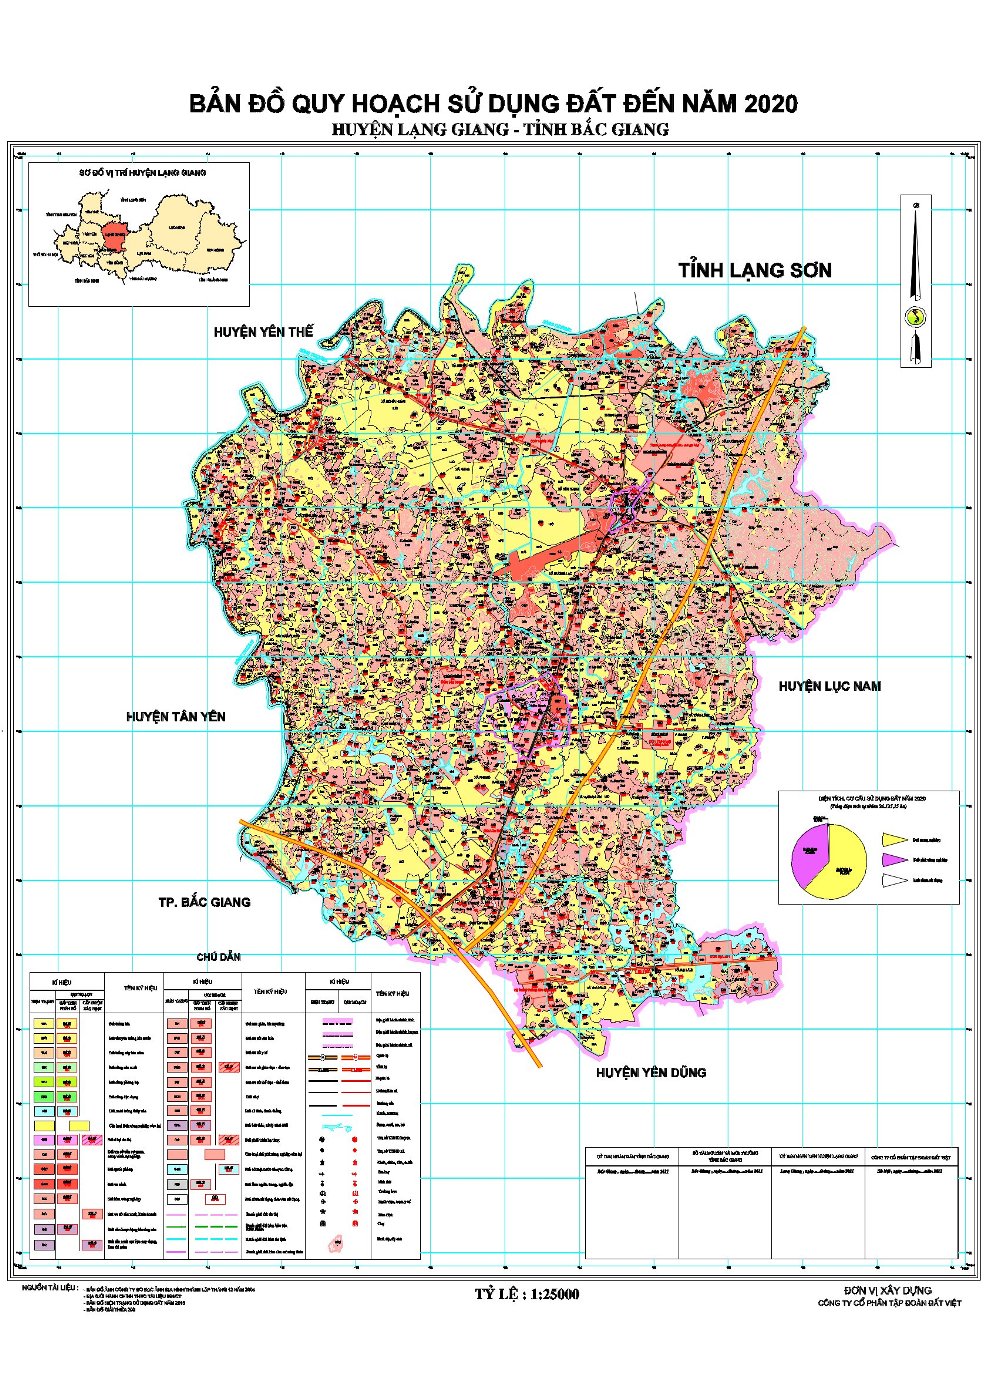 Bản đồ quy hoạch sử dụng đất huyện Lạng Giang đến năm 2020